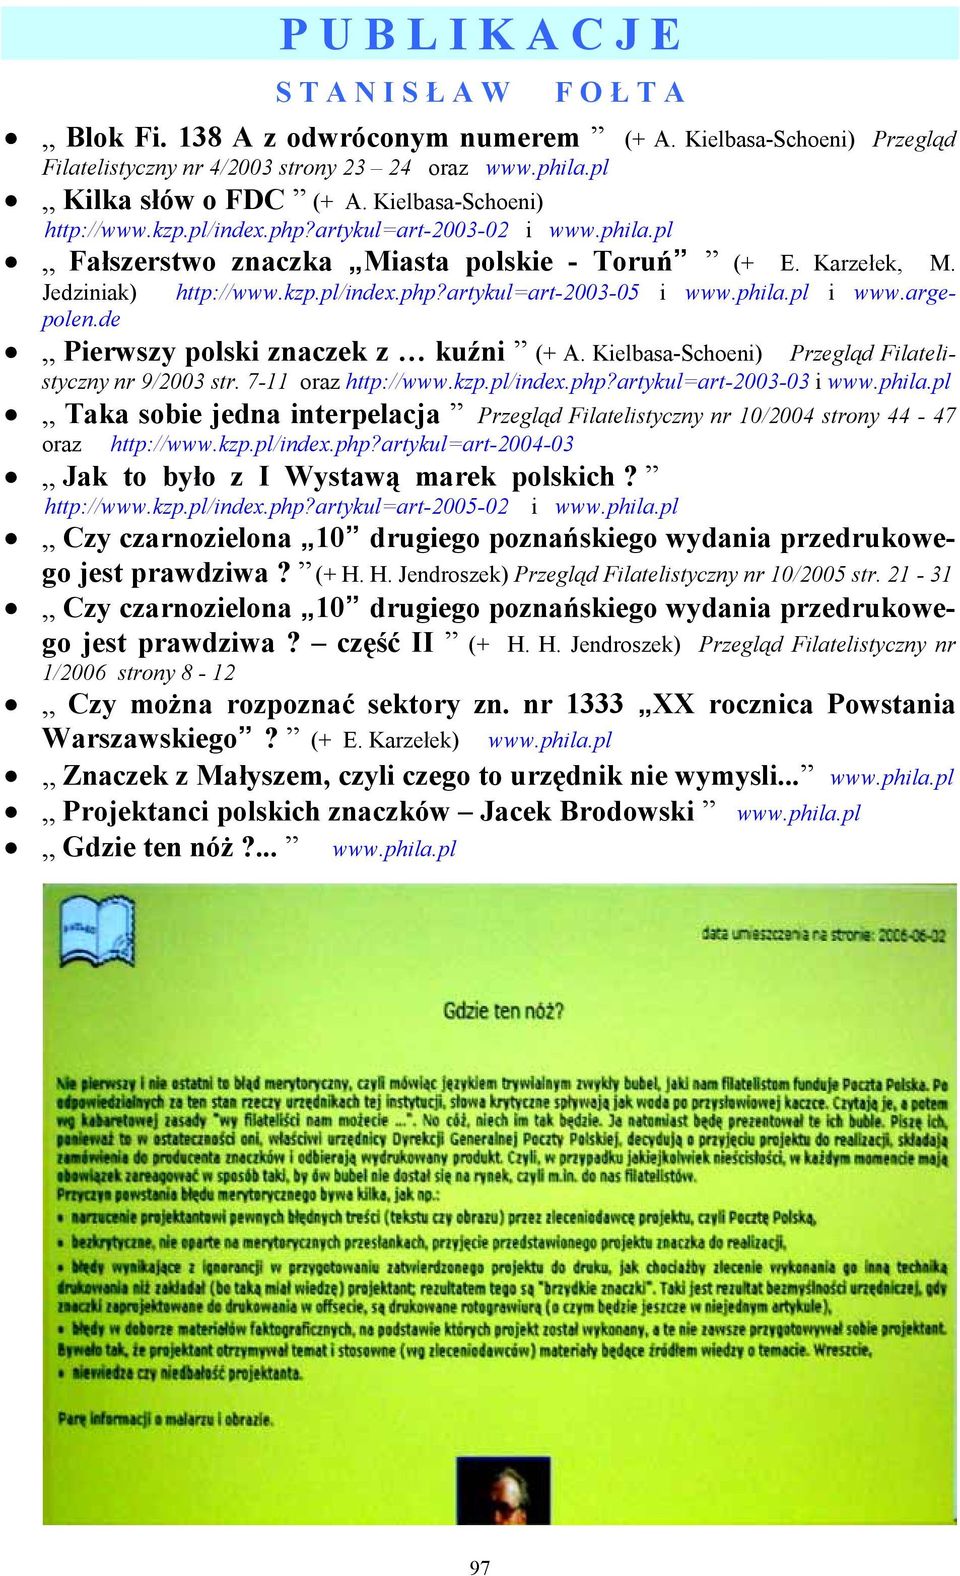 phila.pl i www.arge- Jedziniak) polen.de Pierwszy polski znaczek z kuźni (+ A. Kielbasa-Schoeni) Przegląd Filatelistyczny nr 9/2003 str. 7-11 oraz http://www.kzp.pl/index.php?